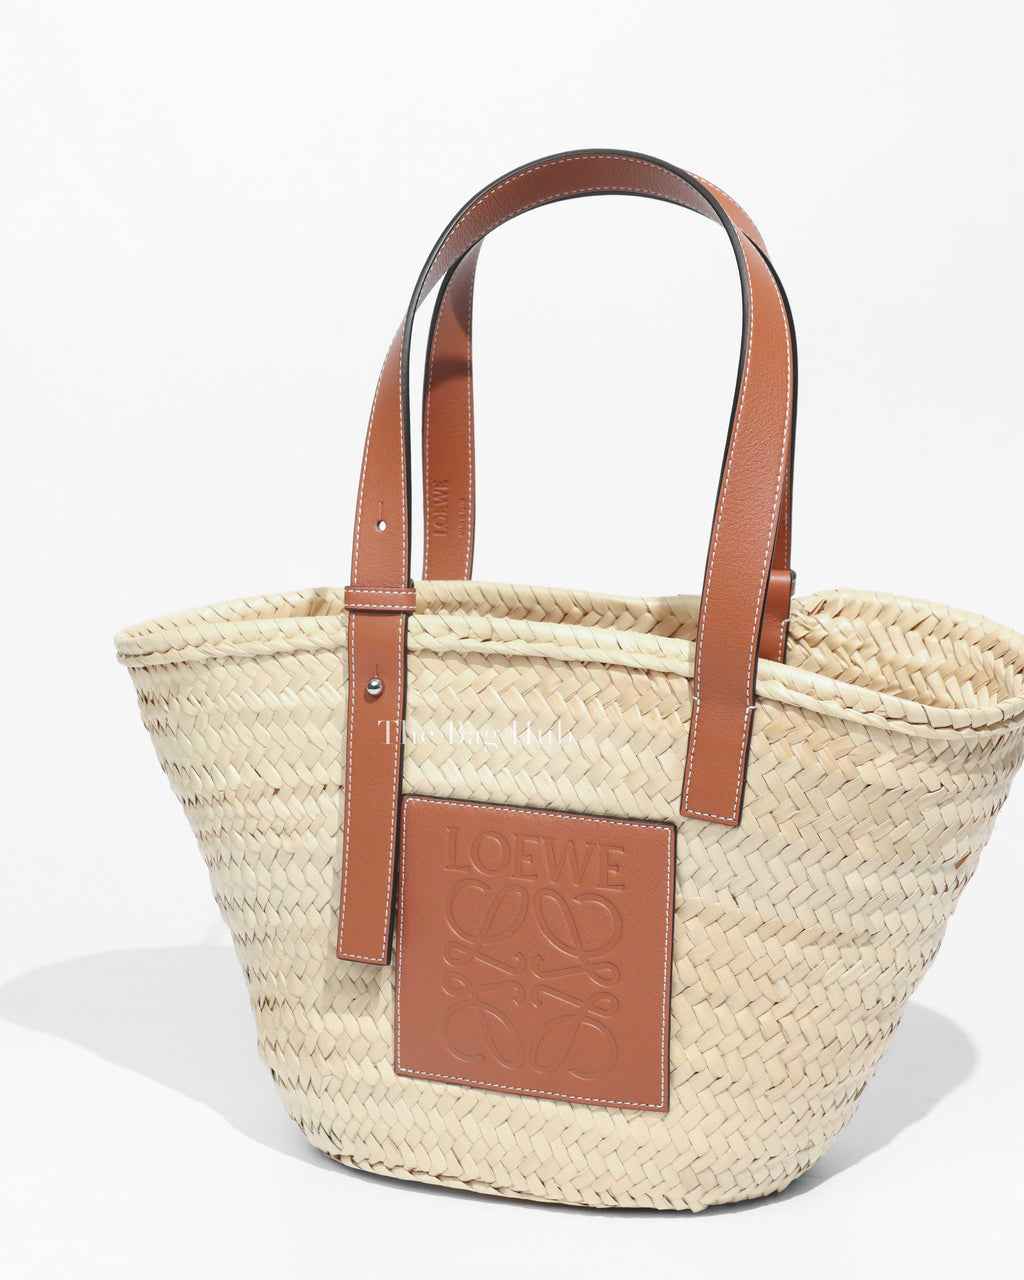 Loewe Brown/Natural Palm Leaf Medium Basket Tote Bag-1